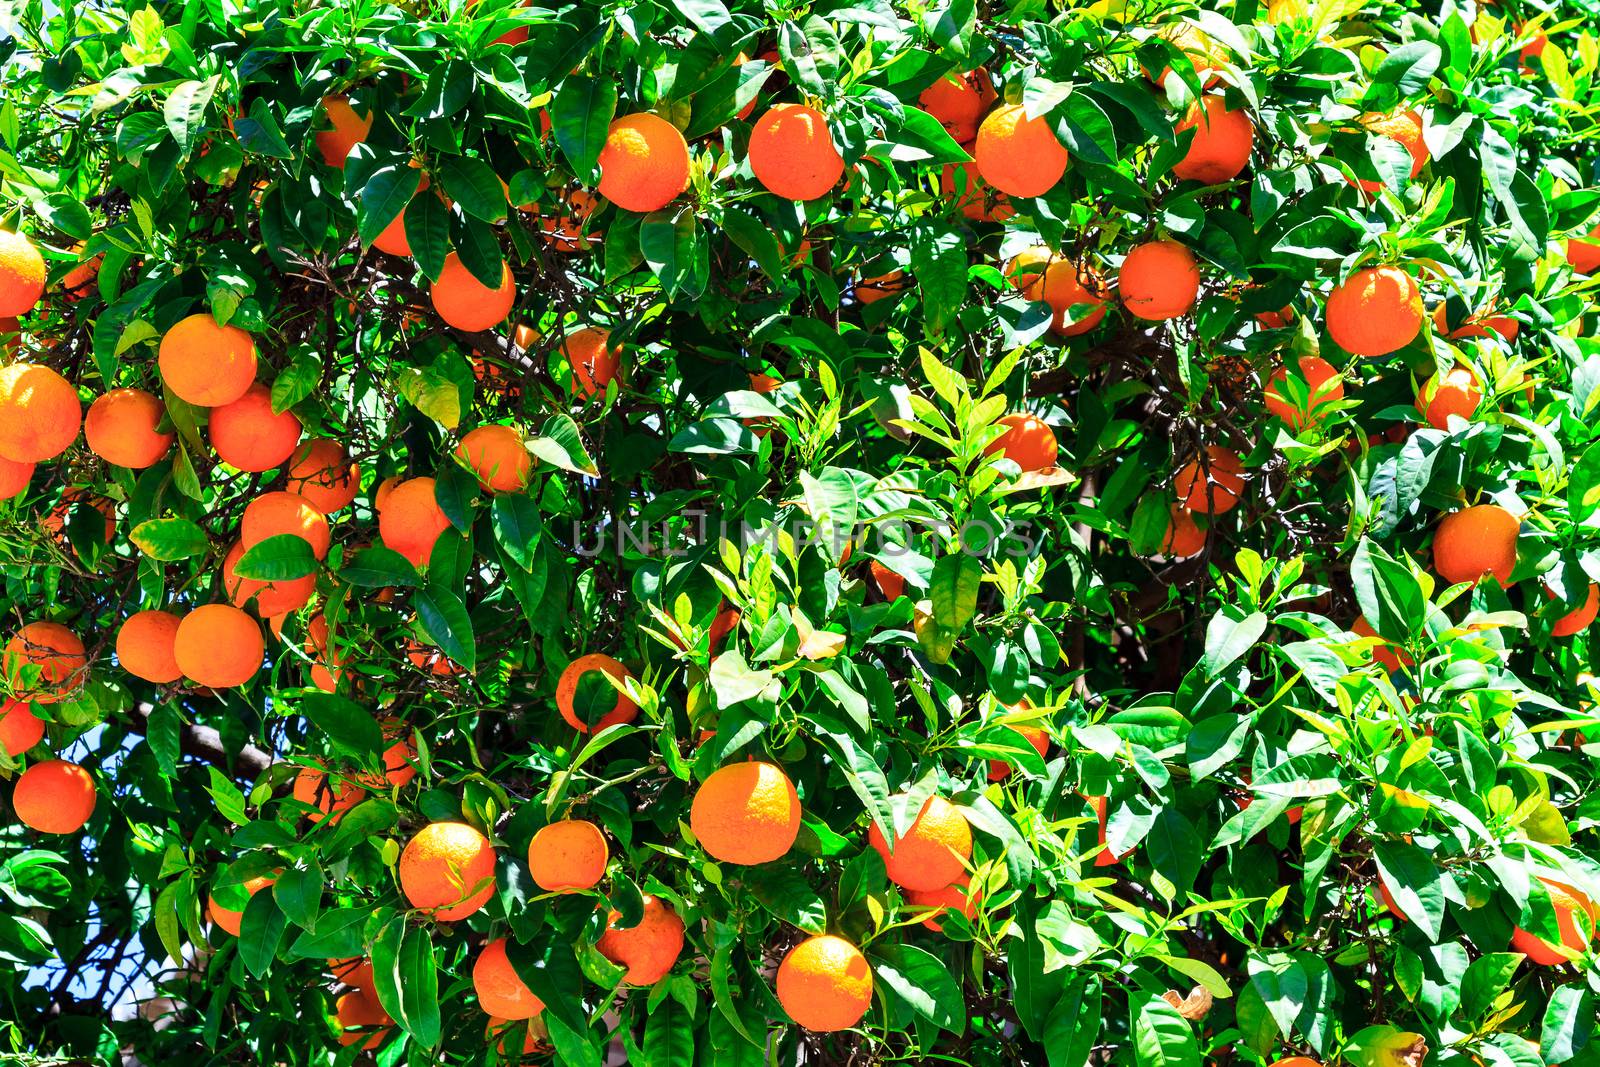 Oranges on the tree